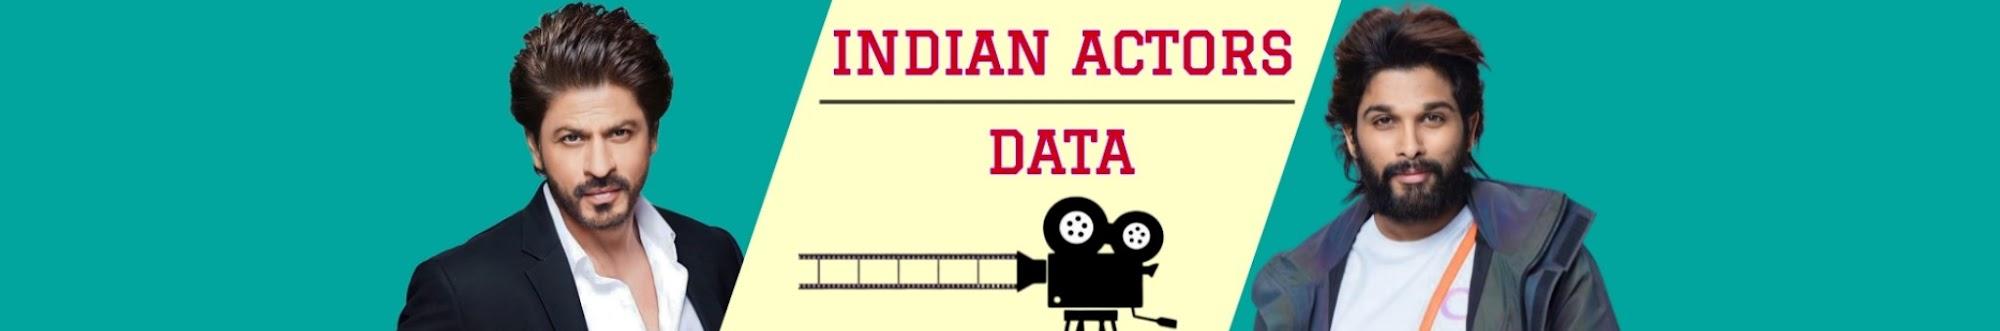 Indian Actors Data